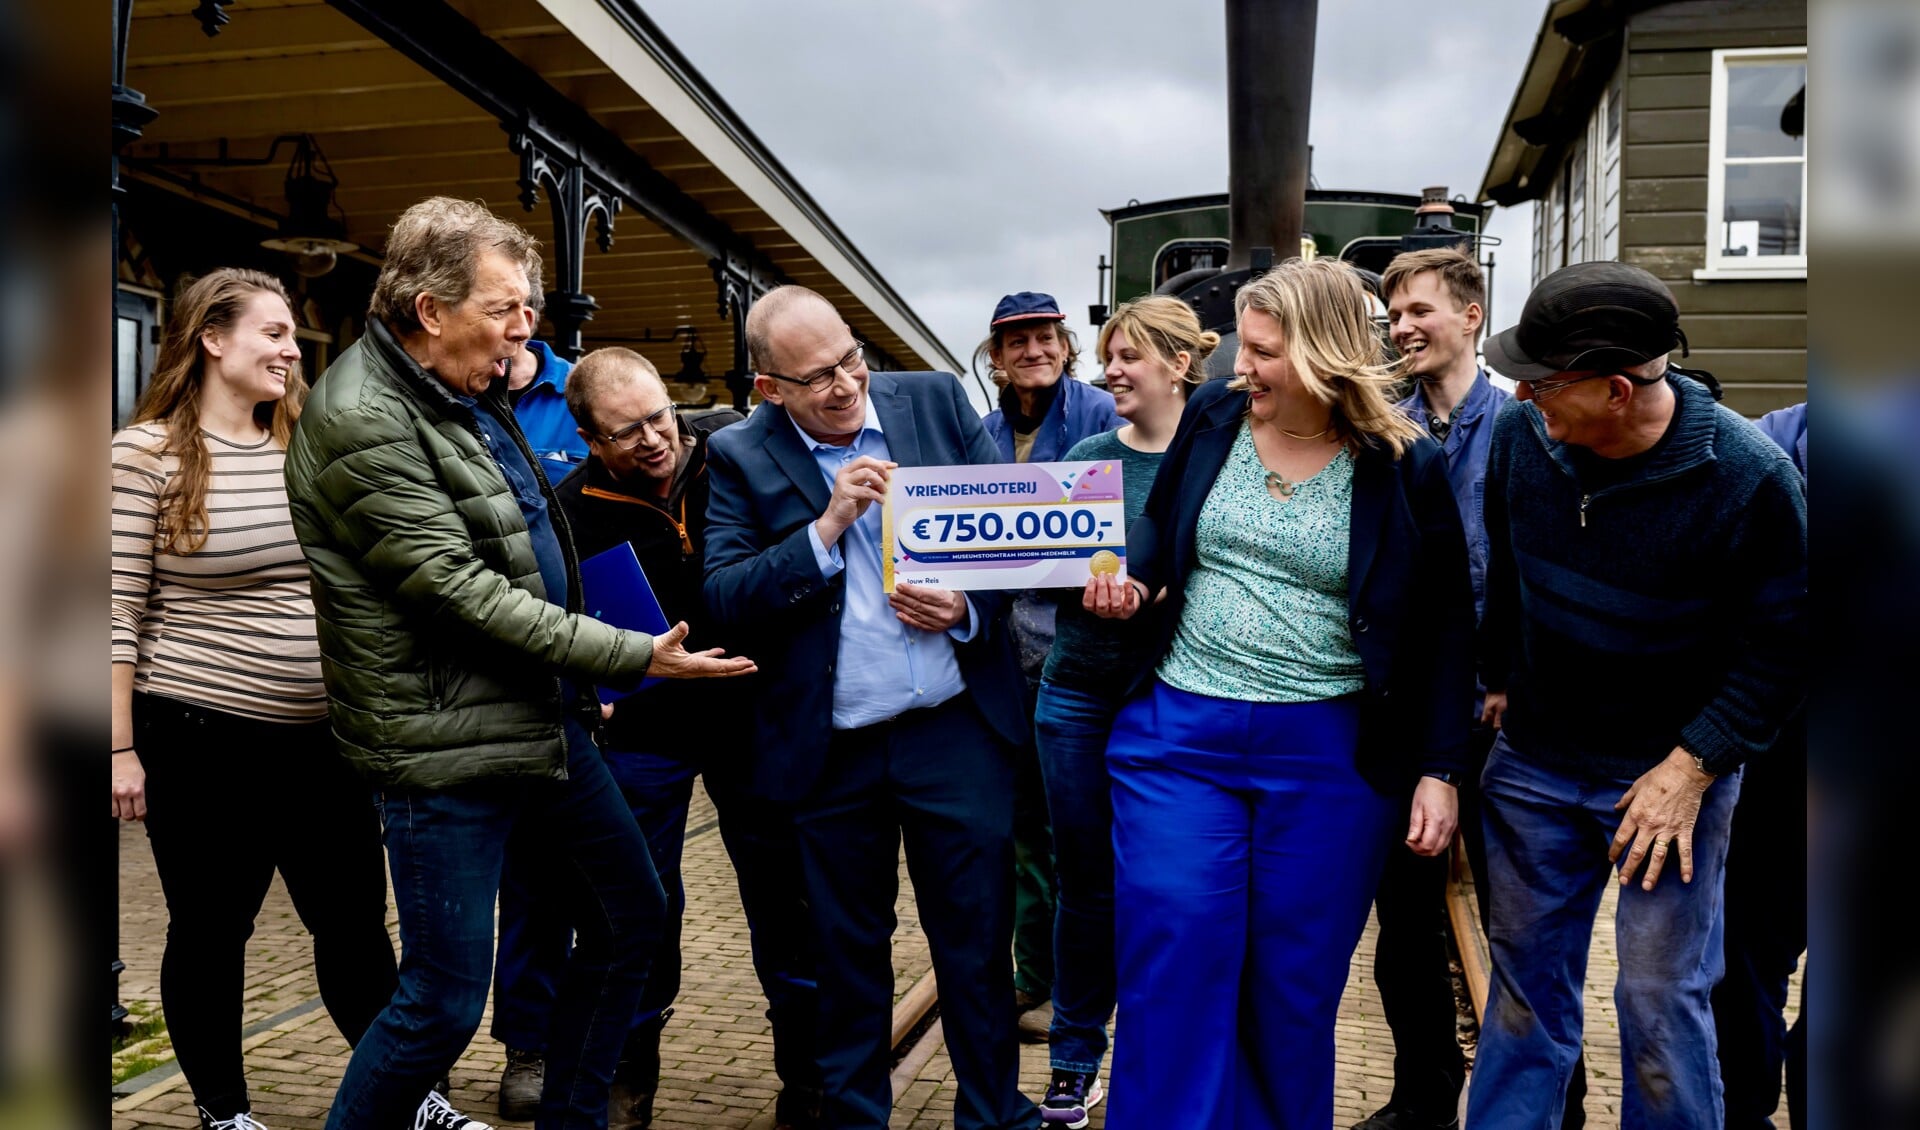 Het grootste rijdende museum van Nederland ontving woensdag 13 maart uit handen van Robert ten Brink een cheque ter waarde van 750.000 euro van de VriendenLoterij voor het project ‘Jouw reis’. 